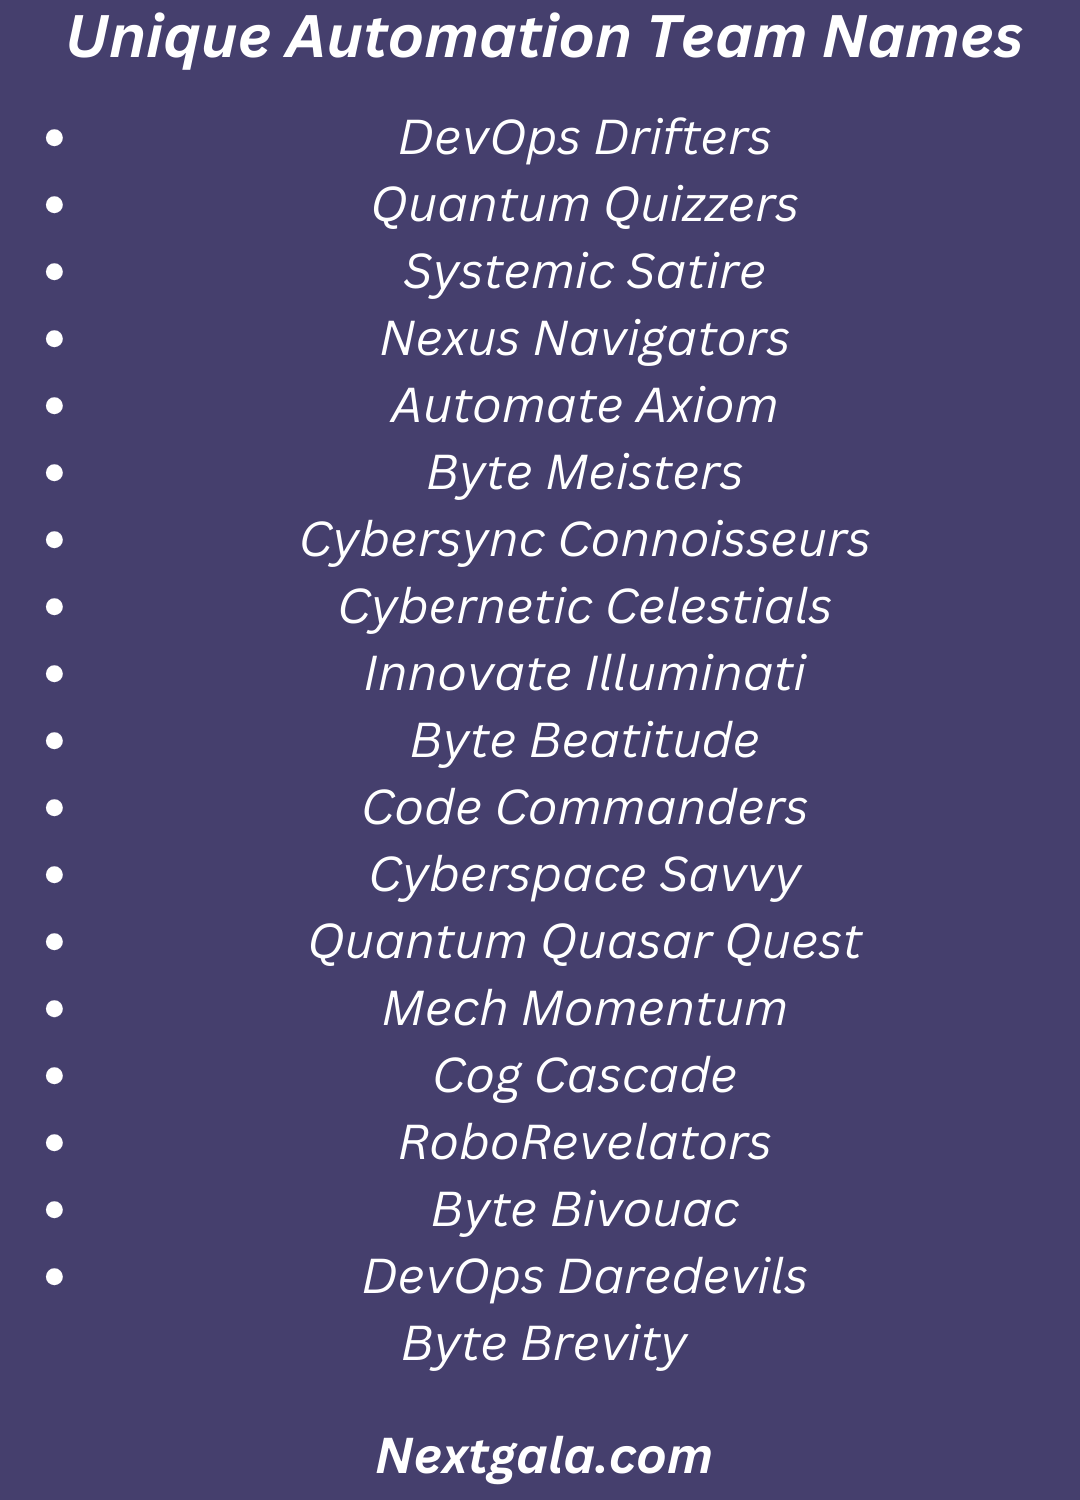 Unique Automation Team Names (1)